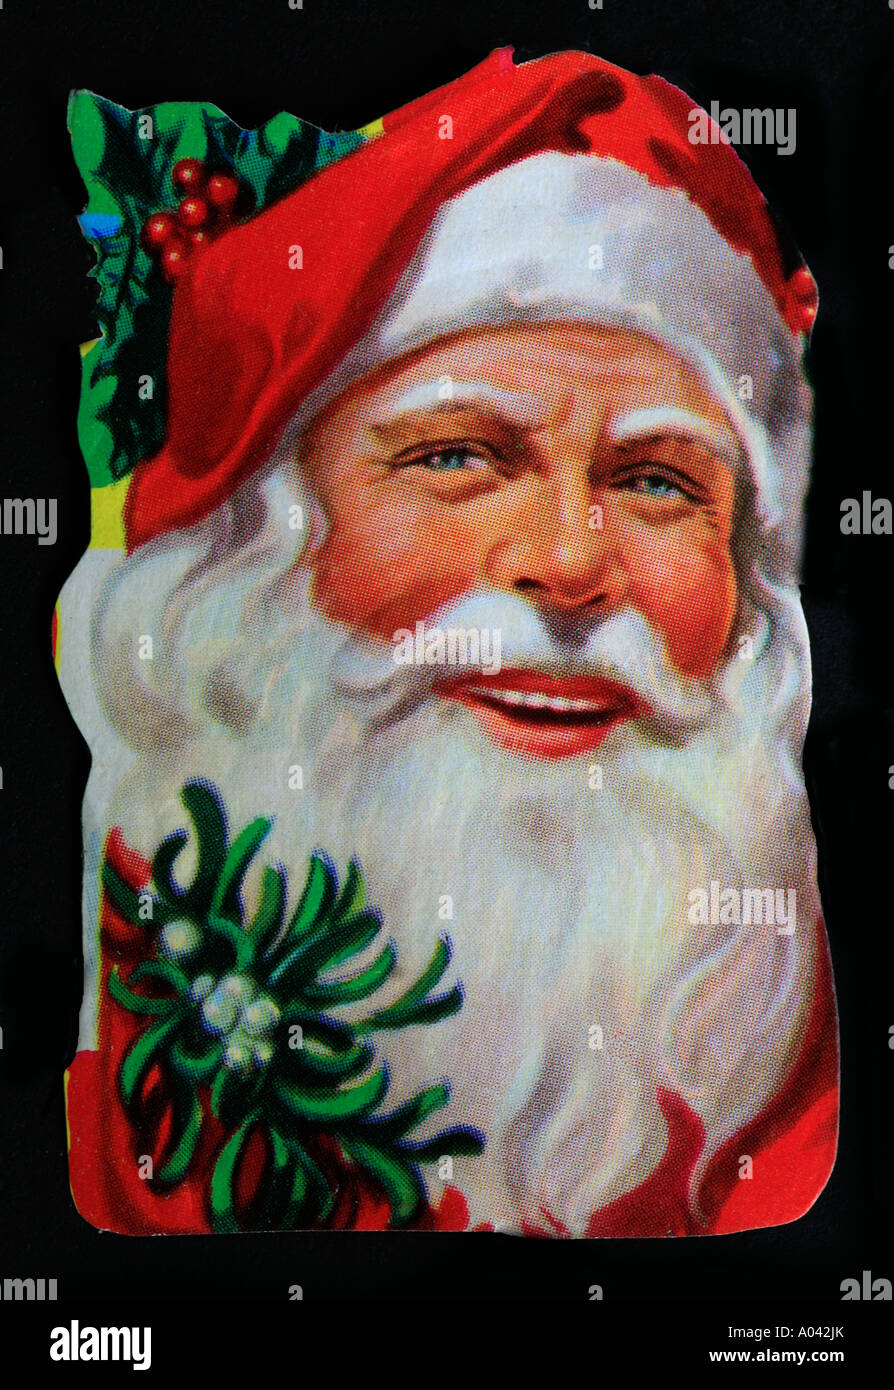 Babbo Natale English.Un Vecchio Stile Inglese Tagliato Fuori Vignetta Di Babbo Natale Foto Immagine Stock 9873018 Alamy